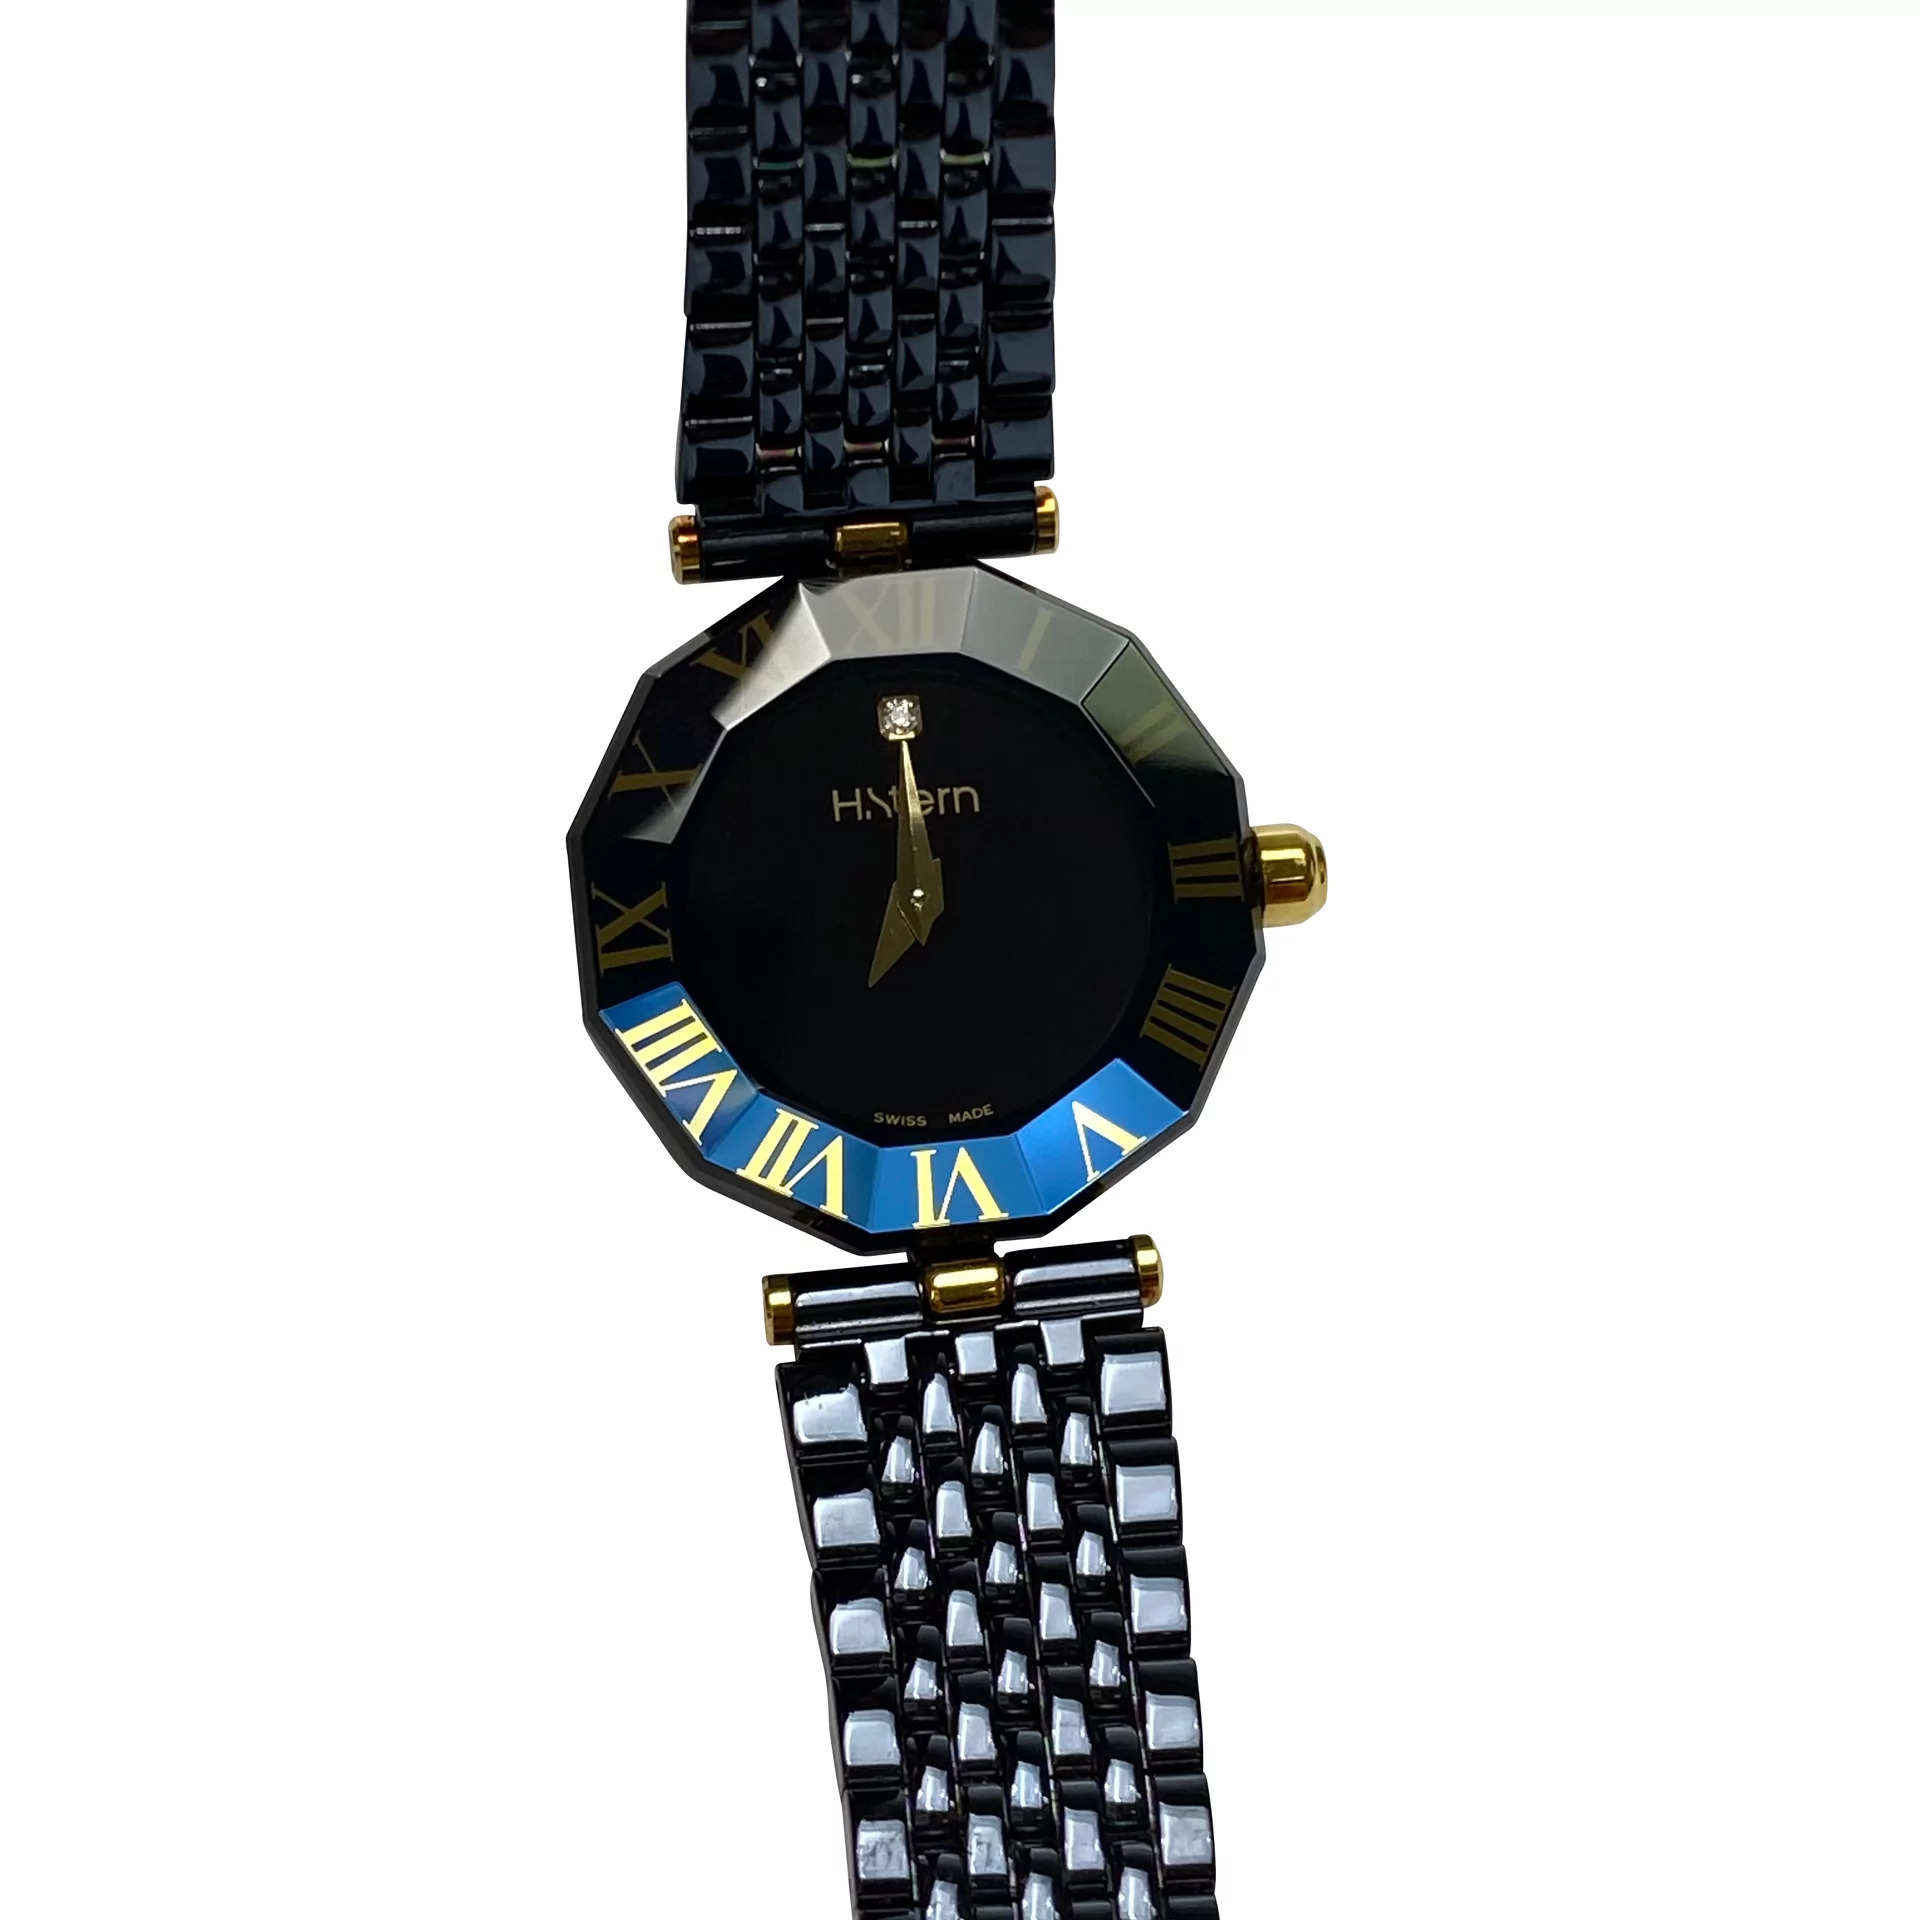 Relógio H.Stern - Sapphire Collection